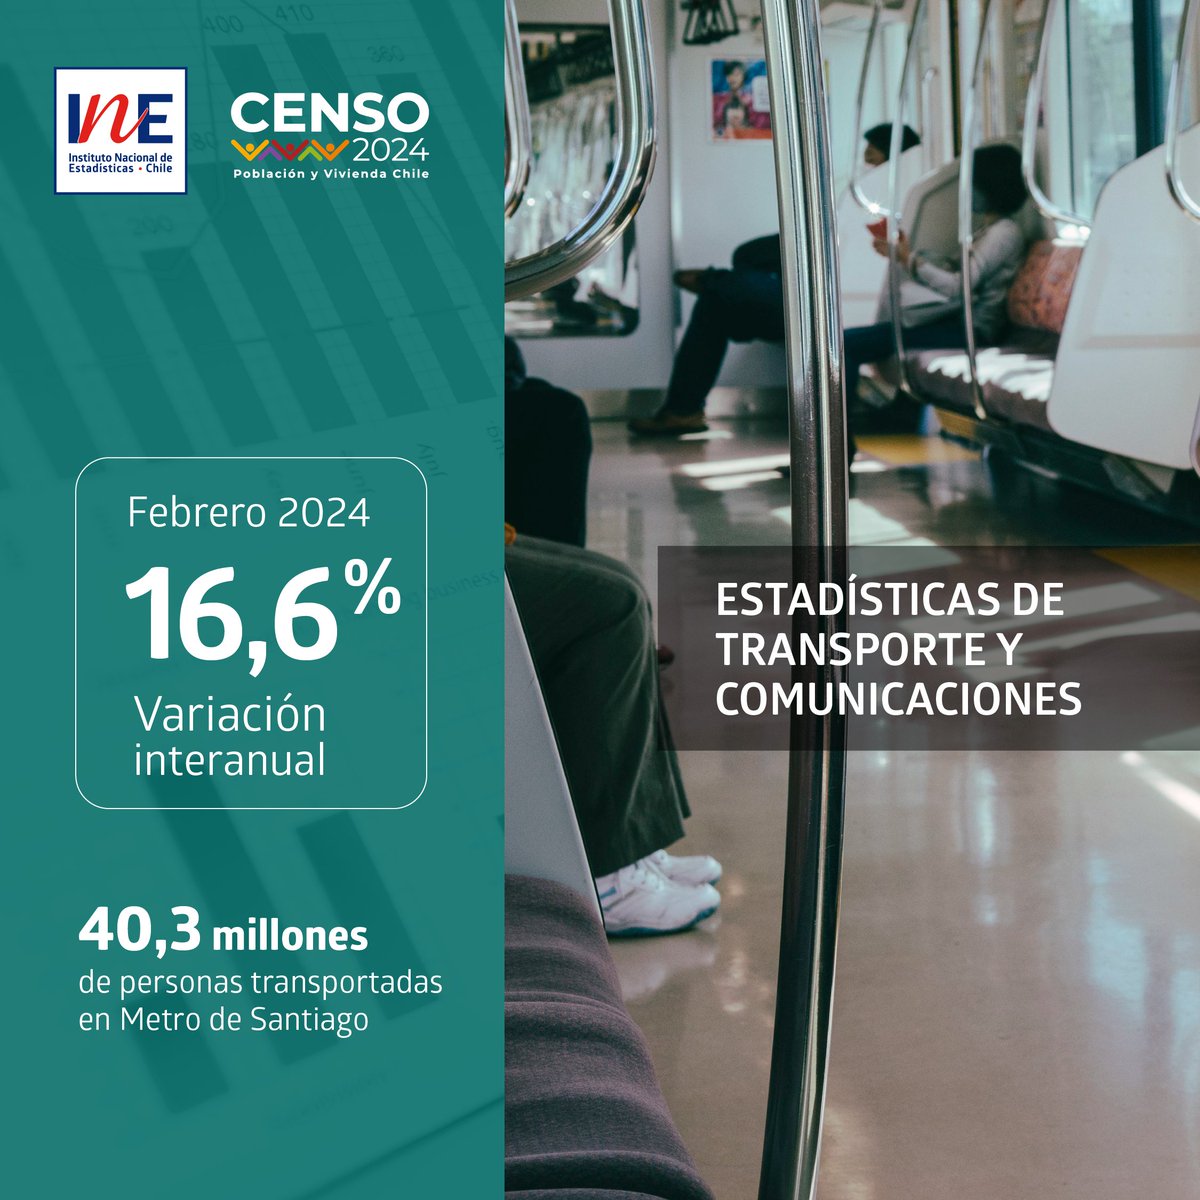 Personas transportadas por Metro de Santiago aumentó 16,6% en febrero de 2024 respecto a igual mes del año anterior. En el mismo período, aumentó el envío de encomiendas a nivel nacional en un 28,7%: tinyurl.com/mvccmthw